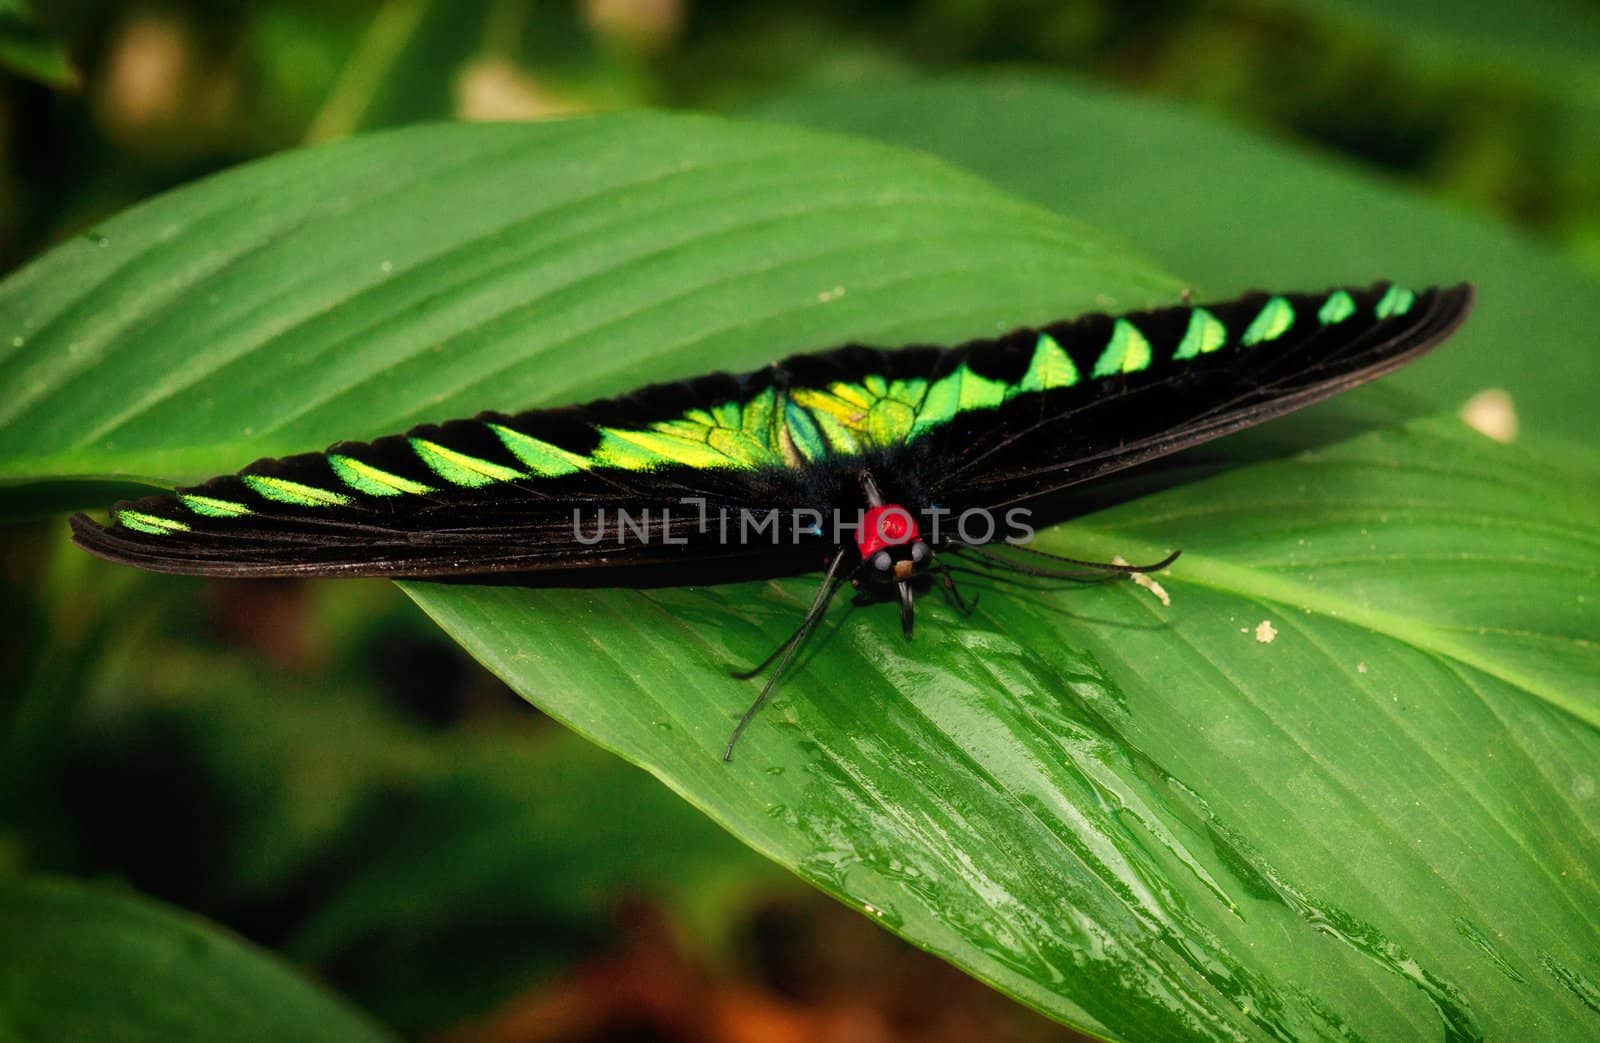 birdwing butterfly by clearviewstock